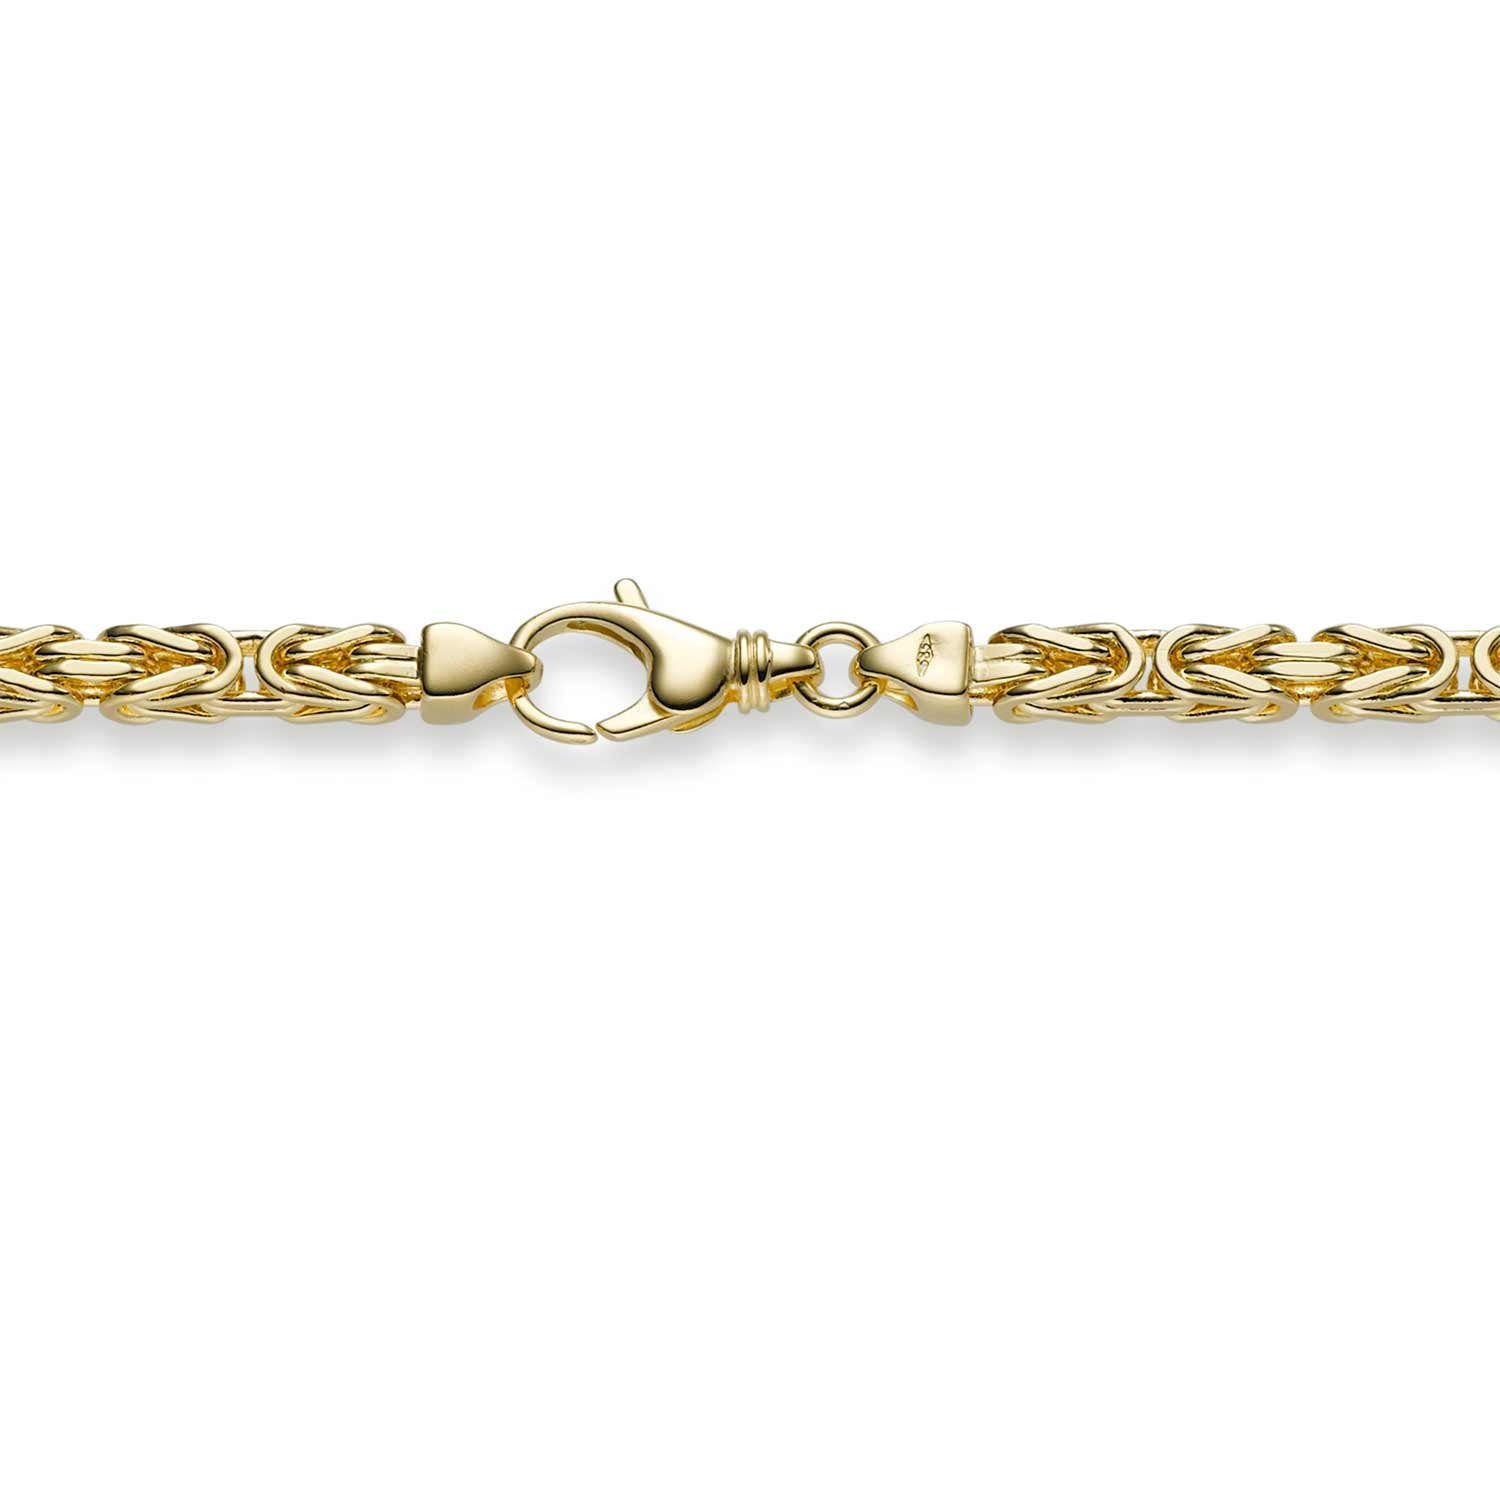 HOPLO Goldarmband Goldkette Königskette Länge 21cm - Breite 4,0mm - 585-14 Karat Gold